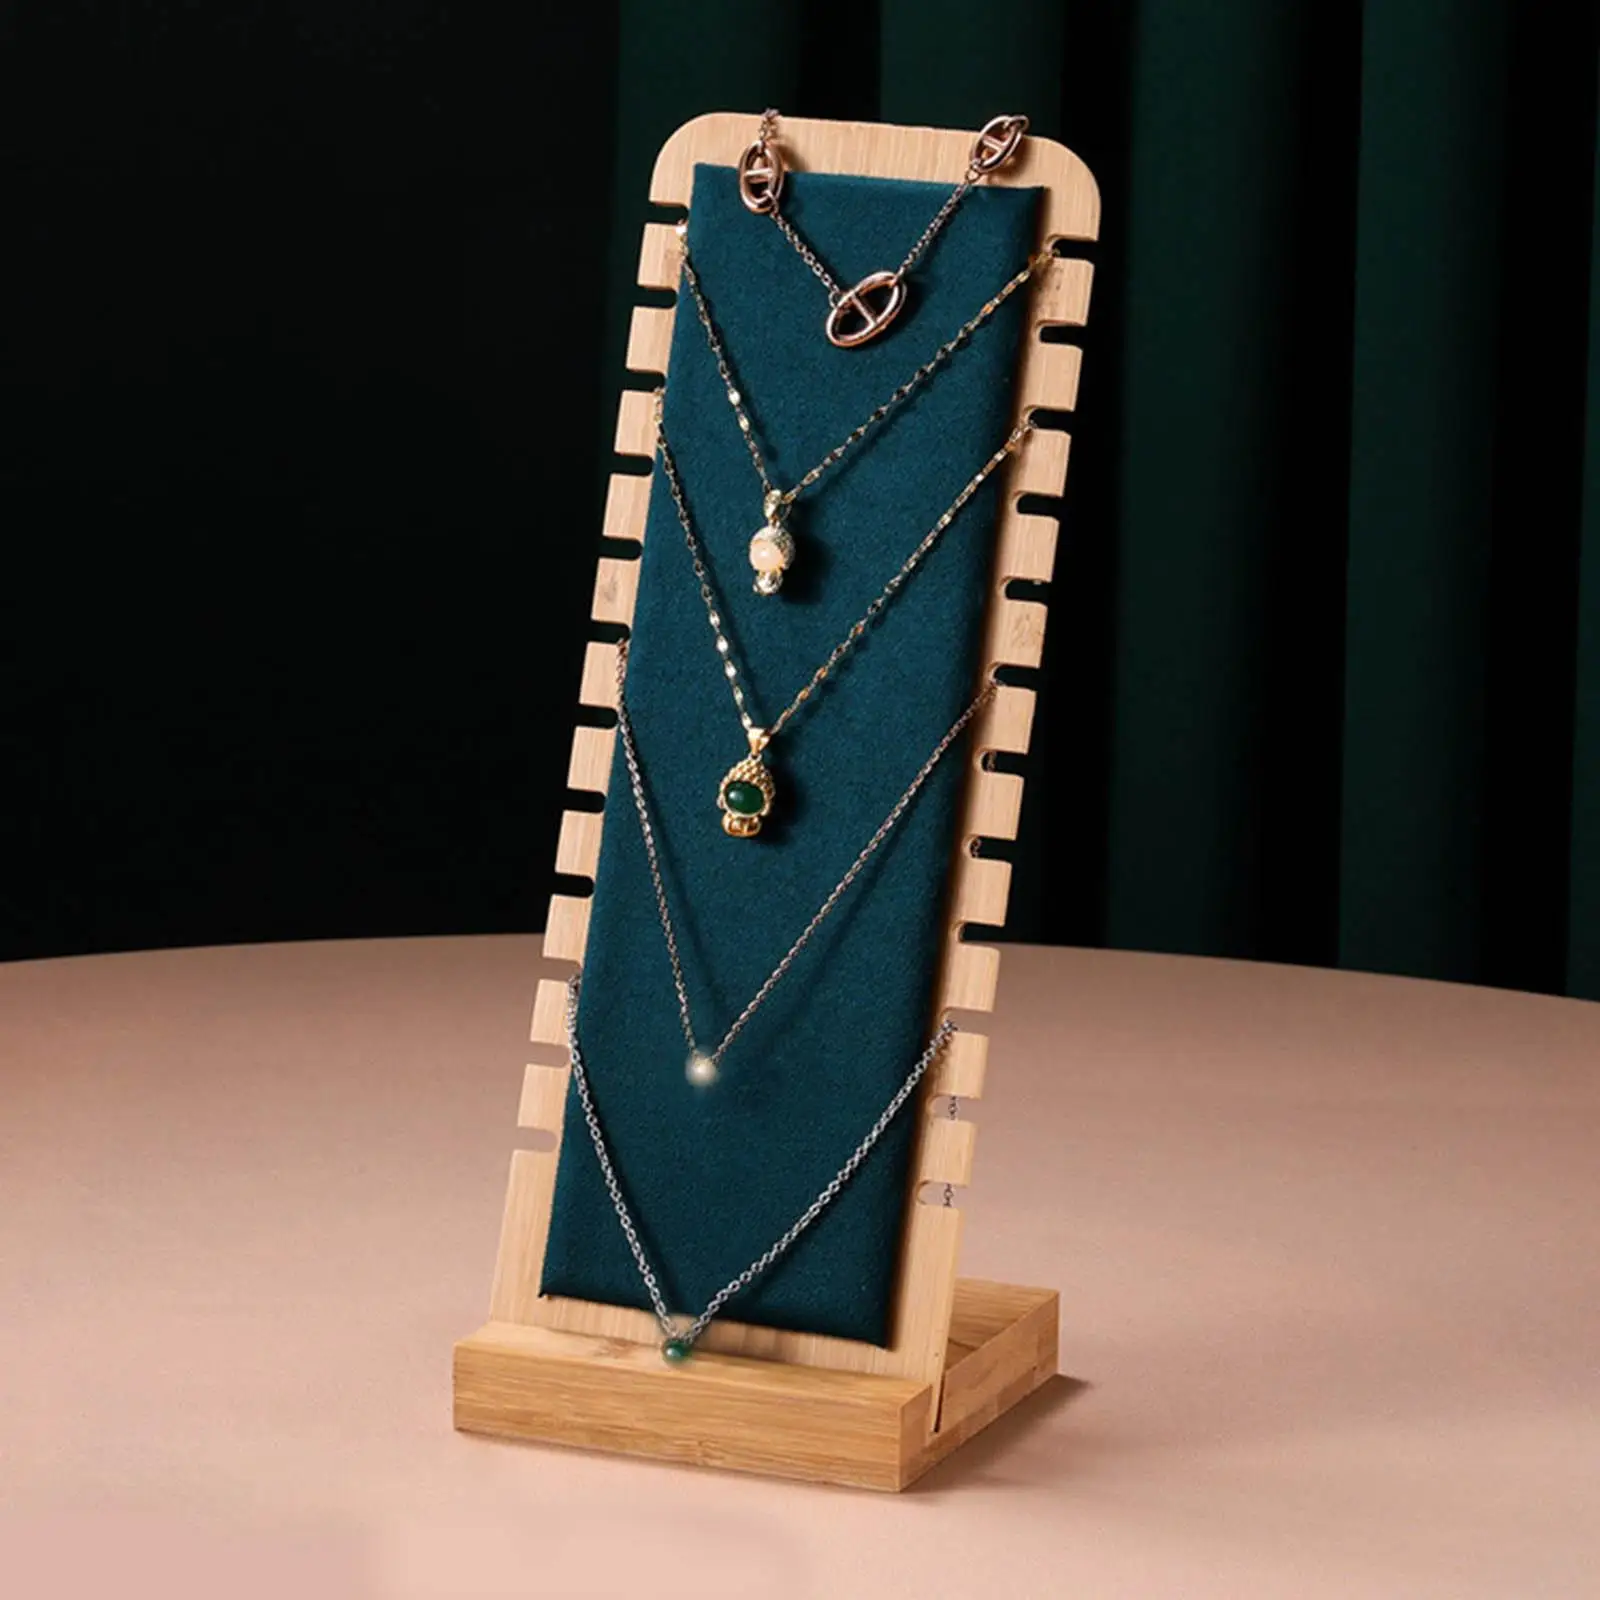 Подставка для показа ювелирных изделий из замши / кожи, Бамбуковый держатель для серег, ожерелья, кольца, кулона, браслета, Органайзера для ювелирных изделий